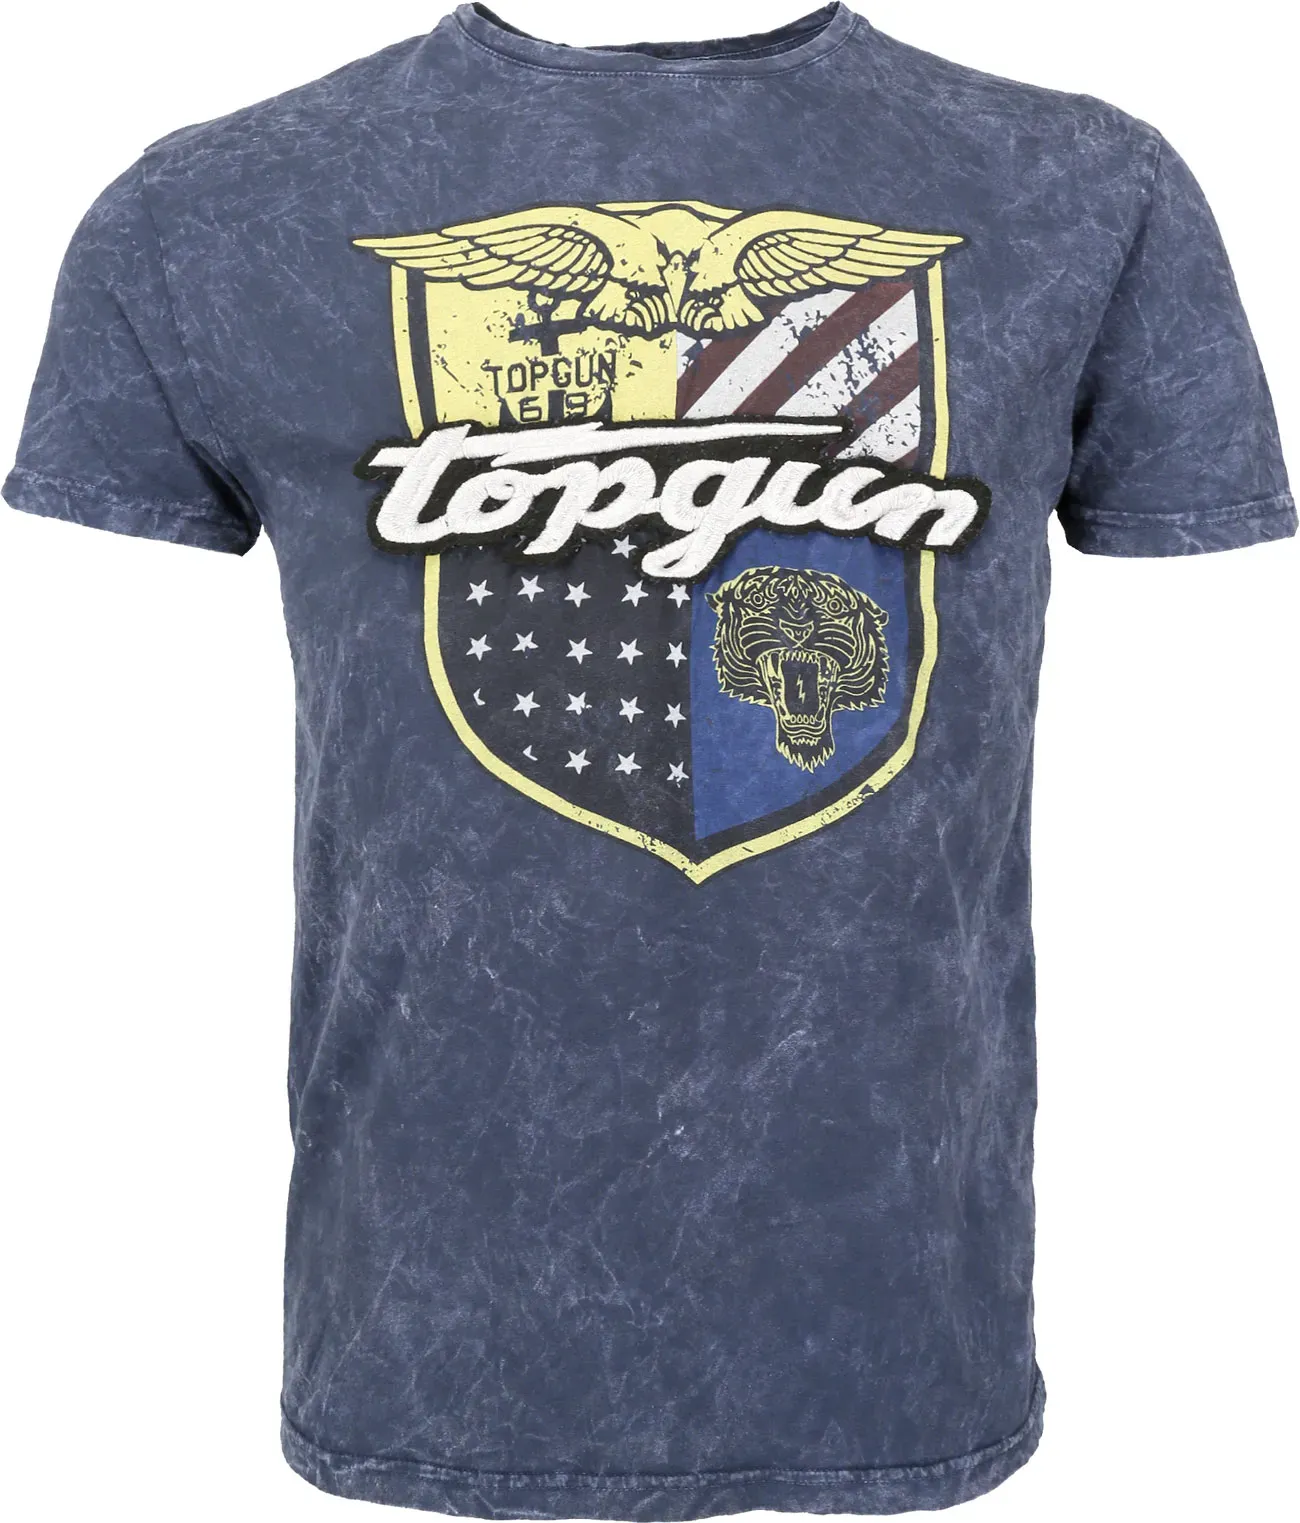 Top Gun Insignia, t-shirt - Bleu Foncé - L